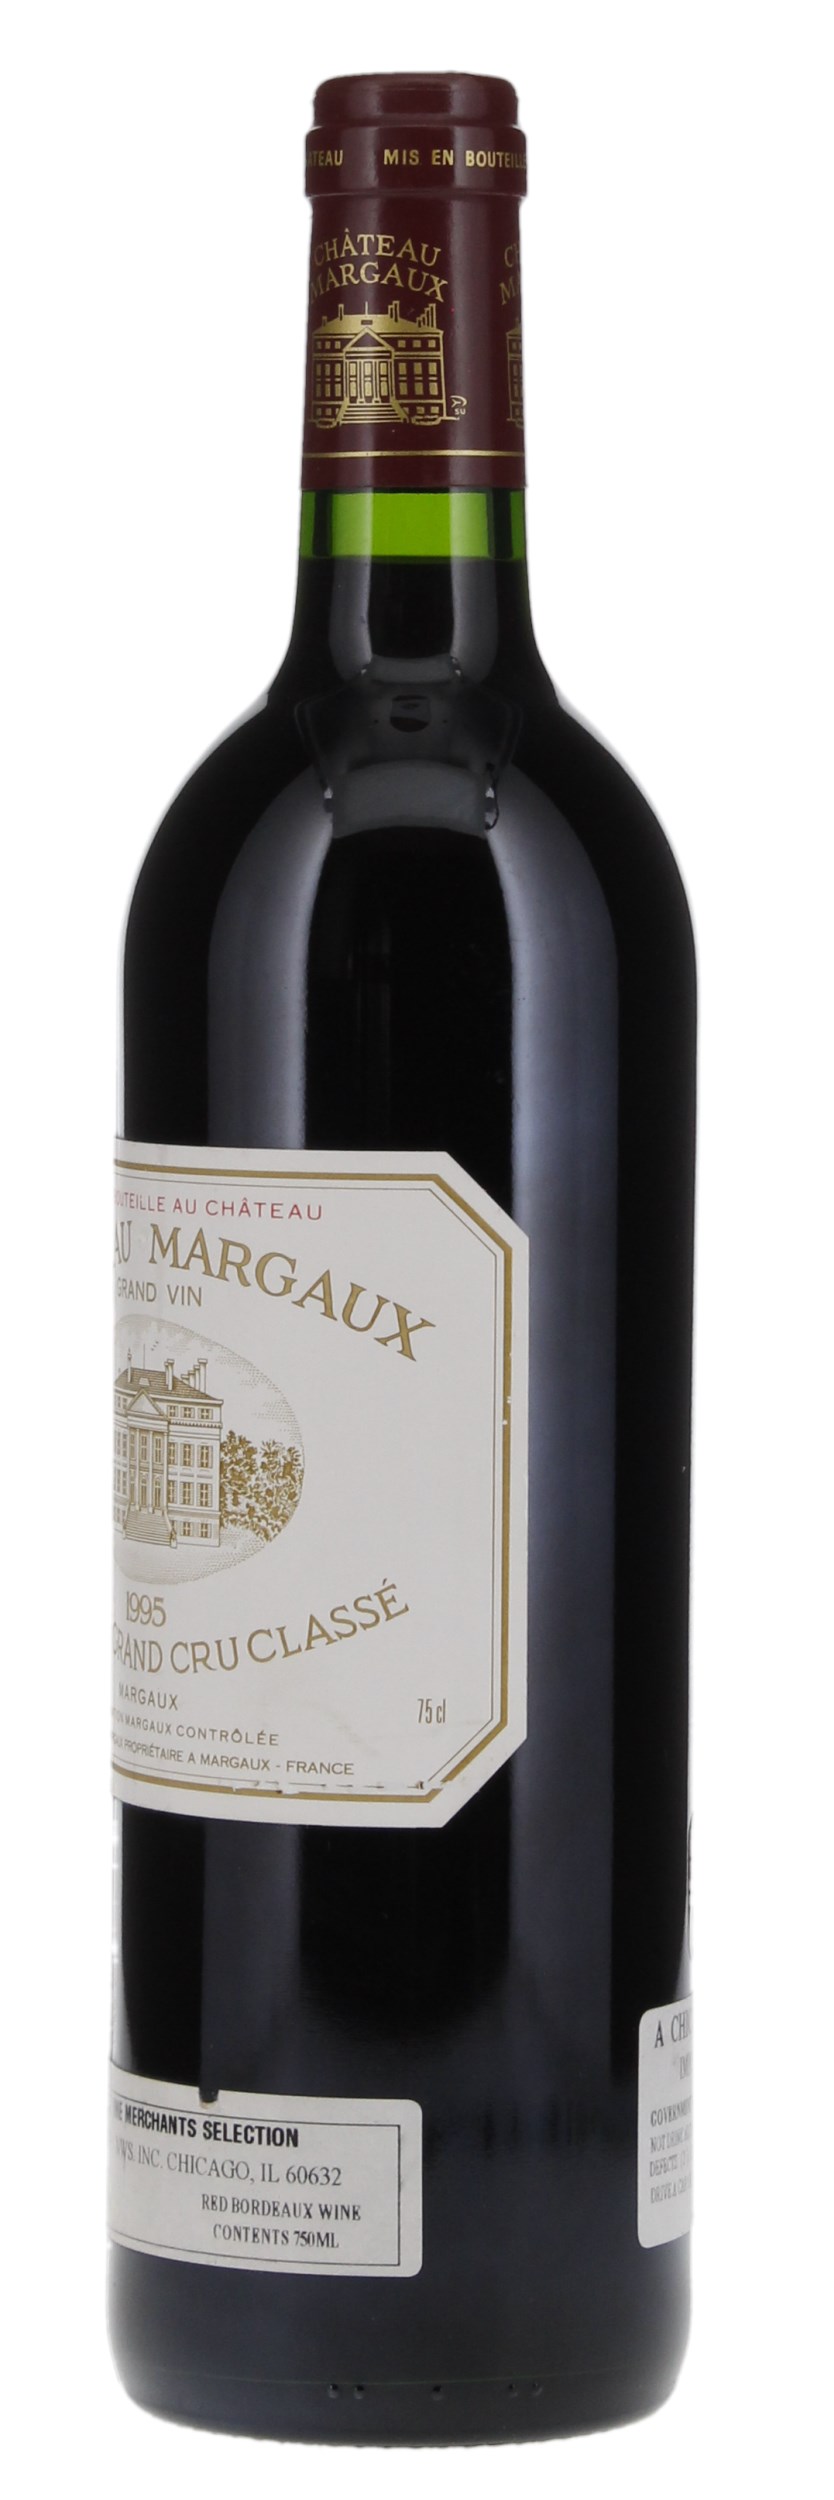 1995 Château Margaux, 750ml